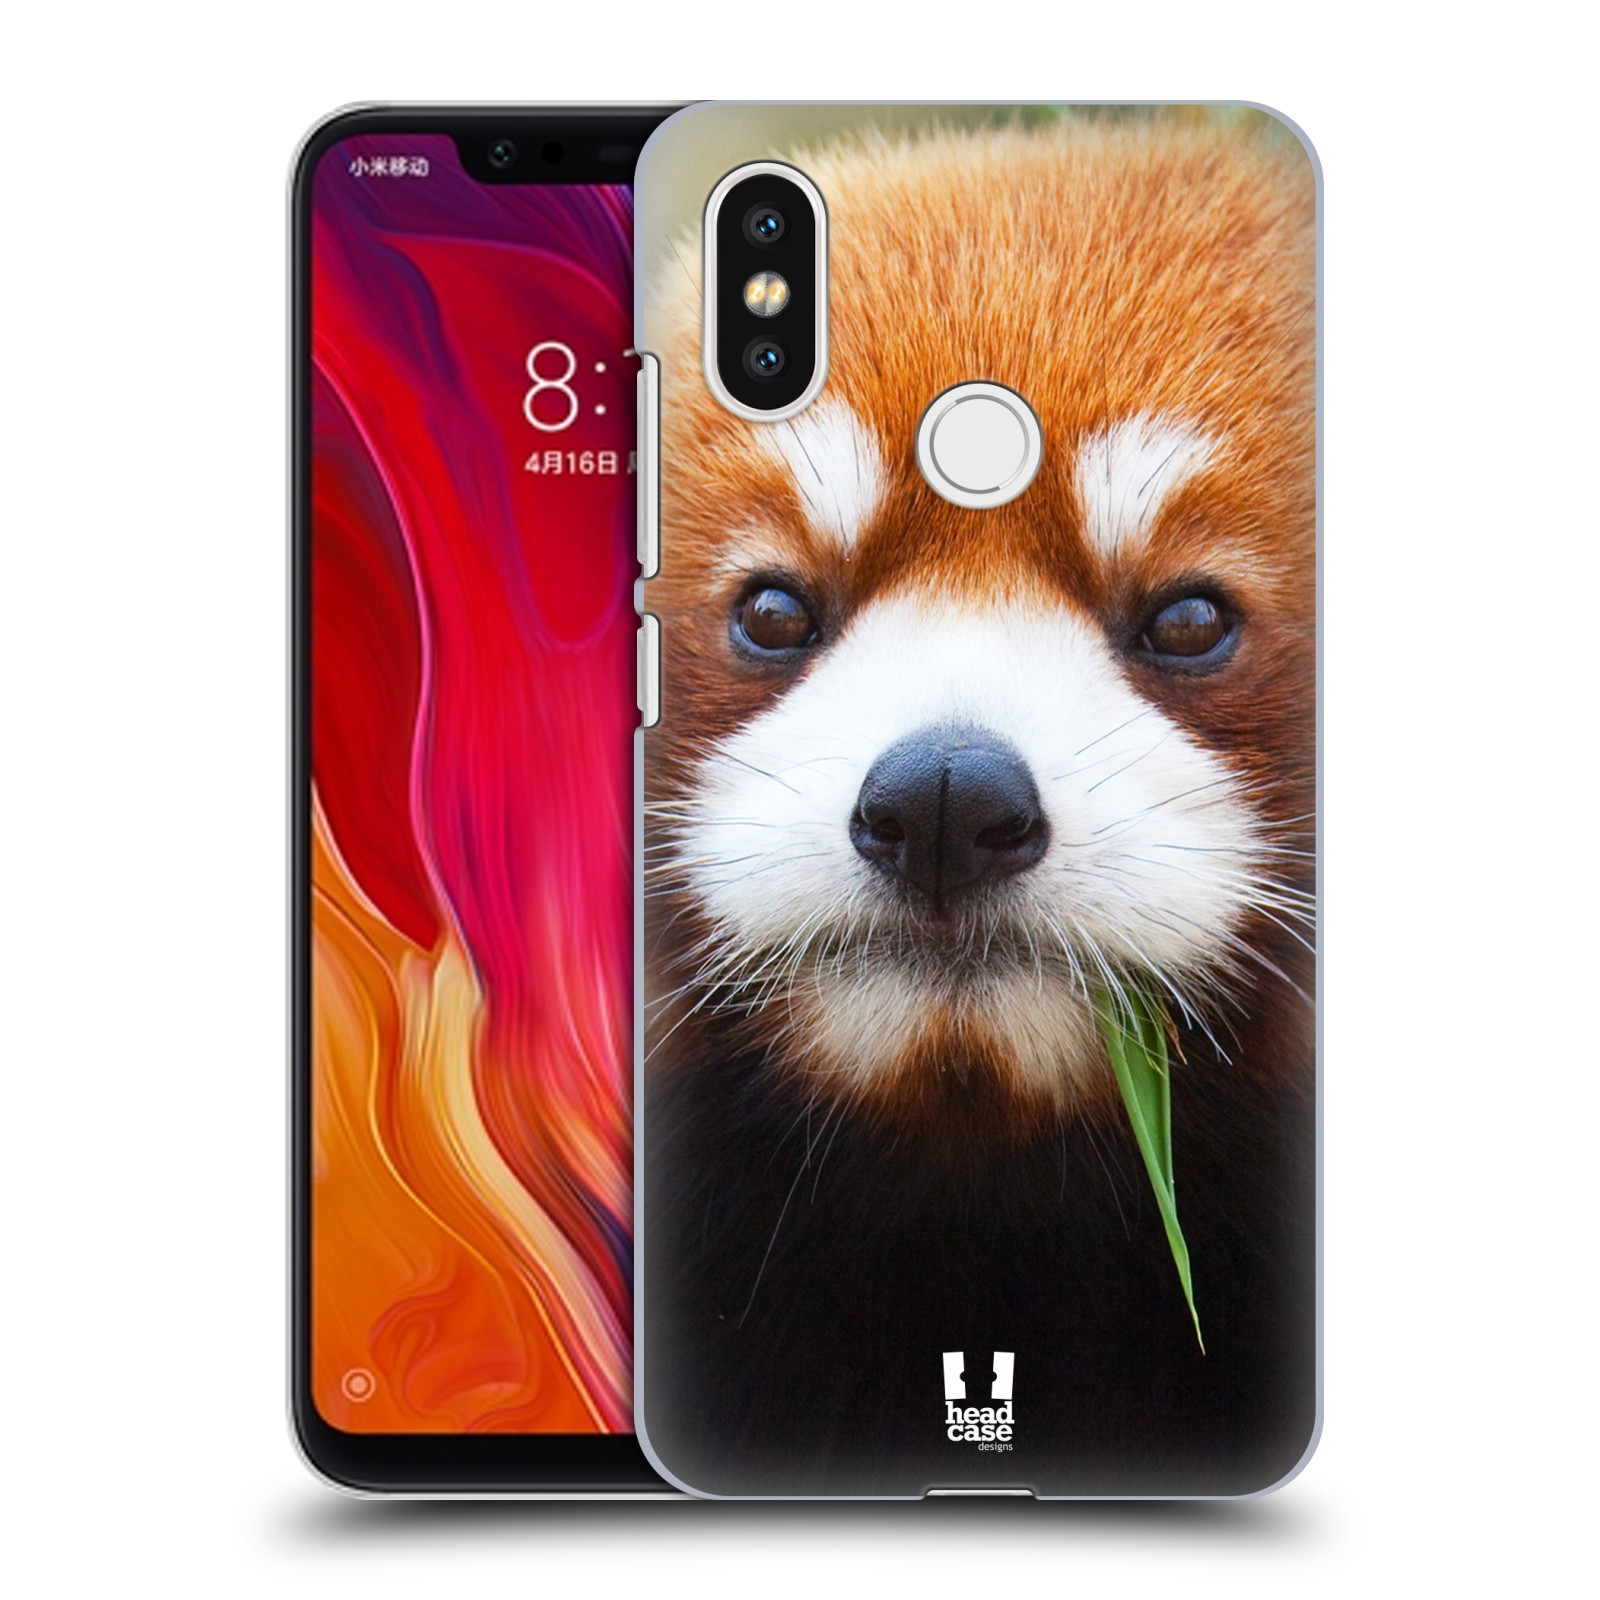 HEAD CASE plastový obal na mobil Xiaomi Mi 8 vzor Divočina, Divoký život a zvířata foto PANDA HNĚDÁ